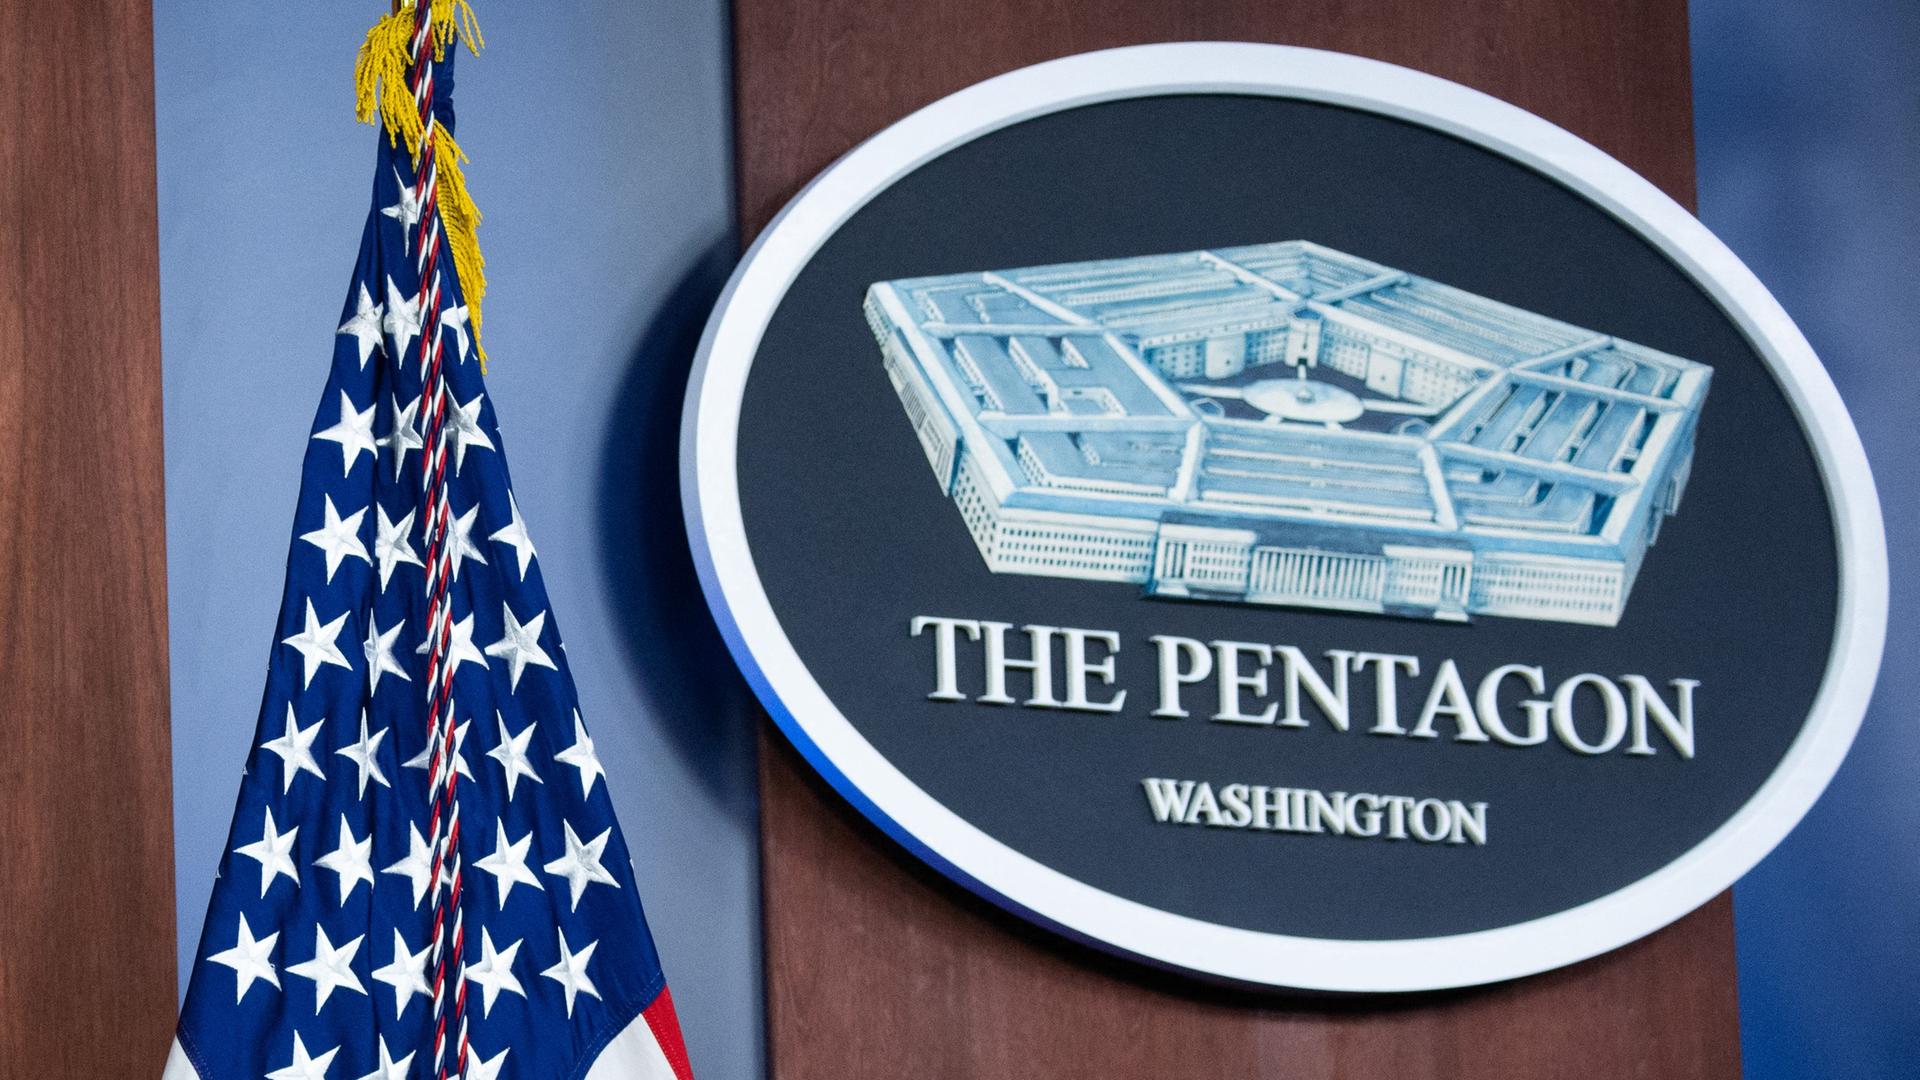 Zu sehen auf dem Bildausschnitt ist das Pentagon-Logo und eine US-amerikanische Flagge